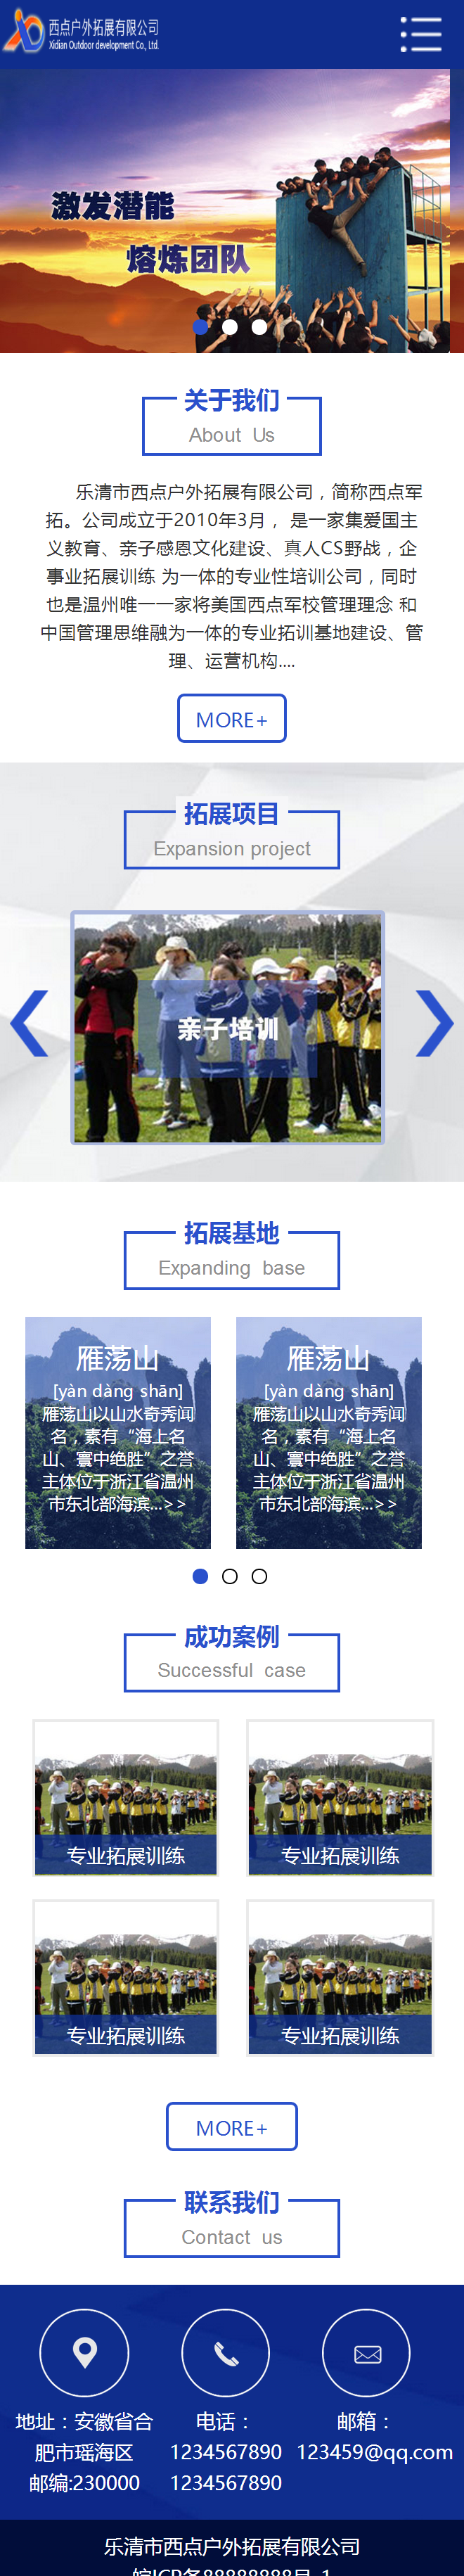 蓝色的户外拓展公司wap微信网站模板